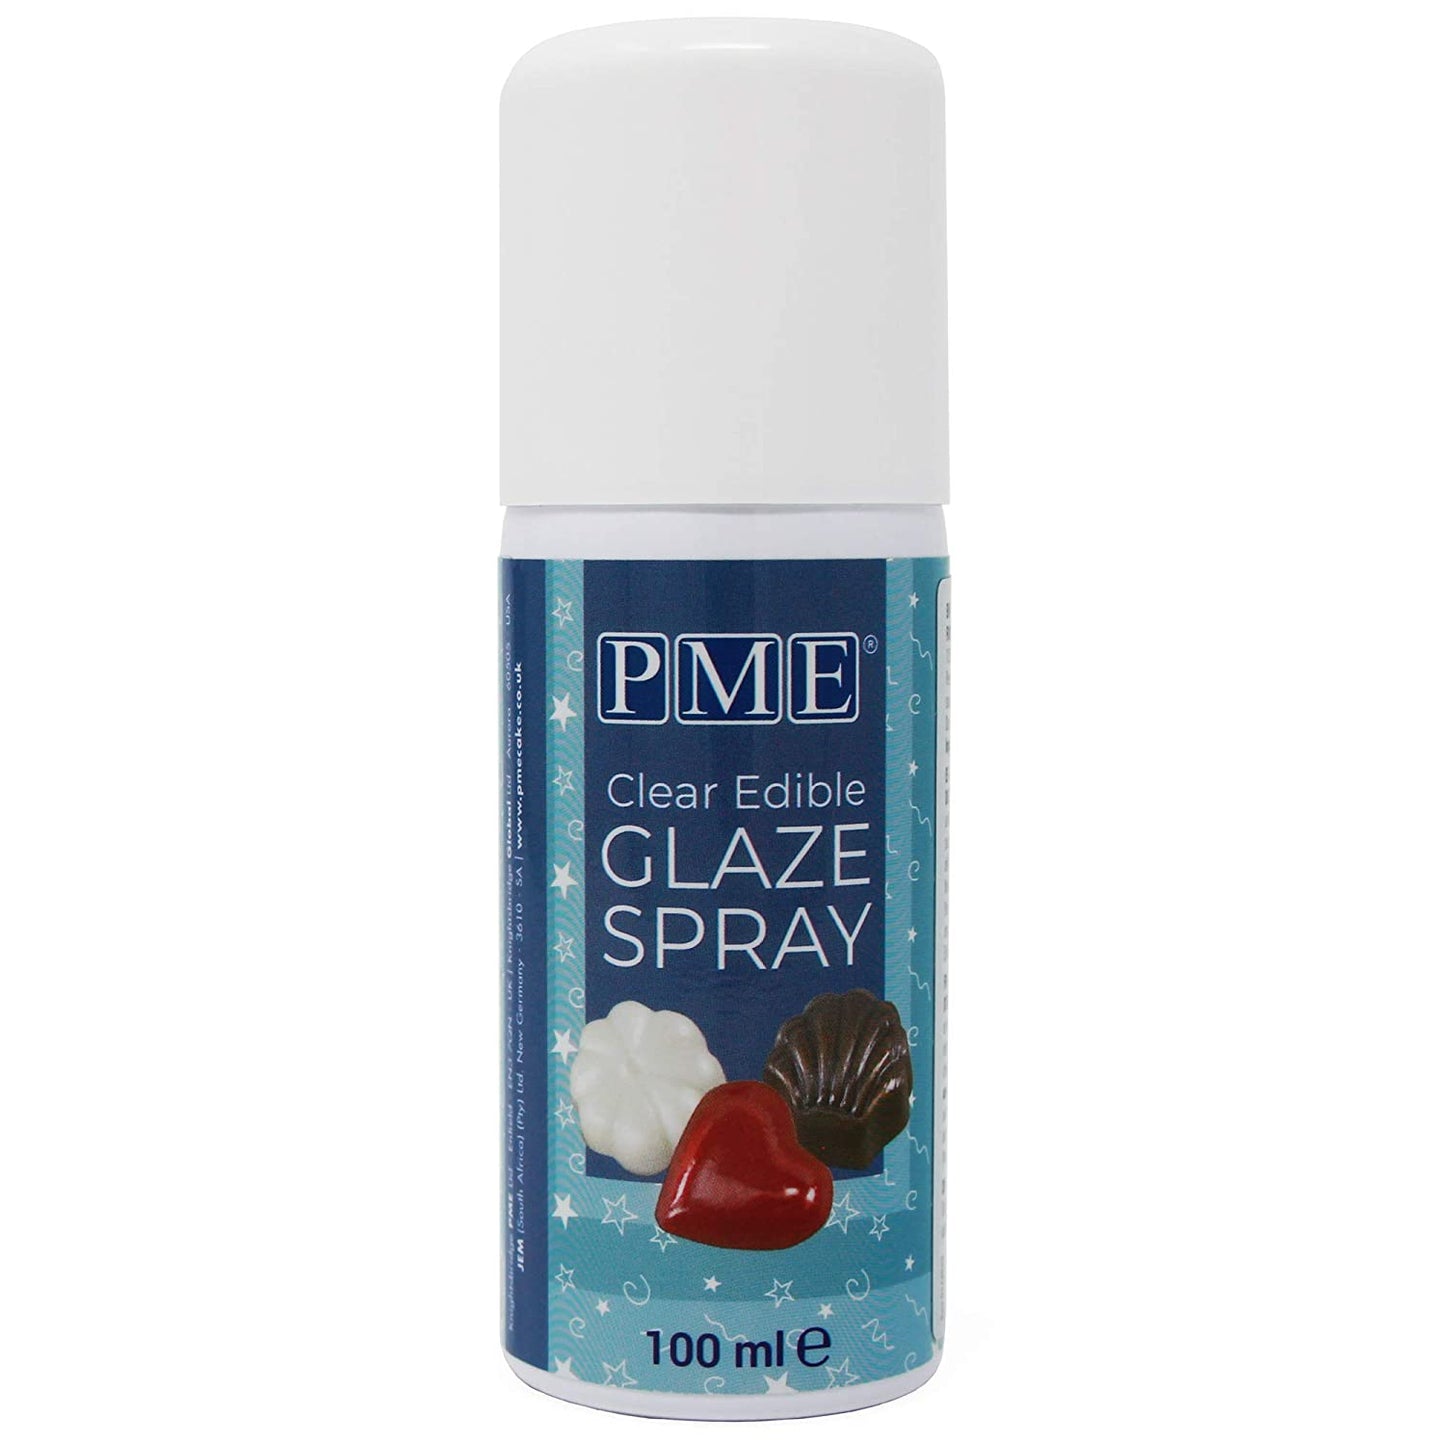 Edible Glaze Spray, PME 100ml